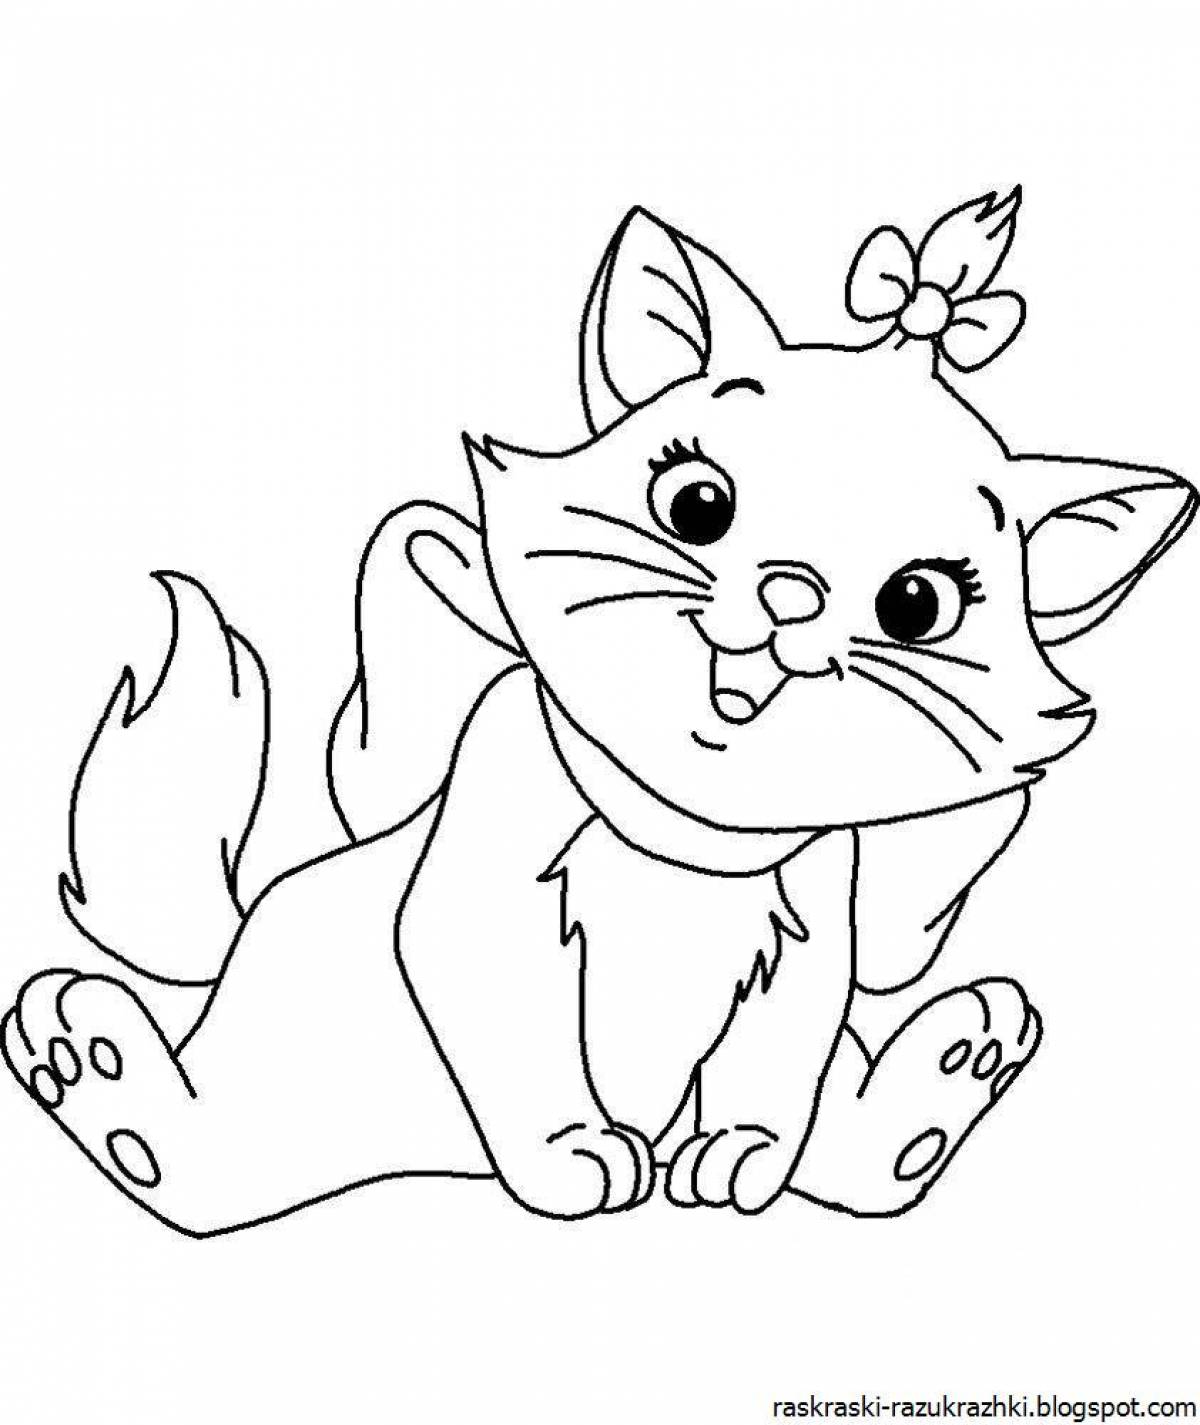 Увлекательная раскраска кошка для детей 6-7 лет